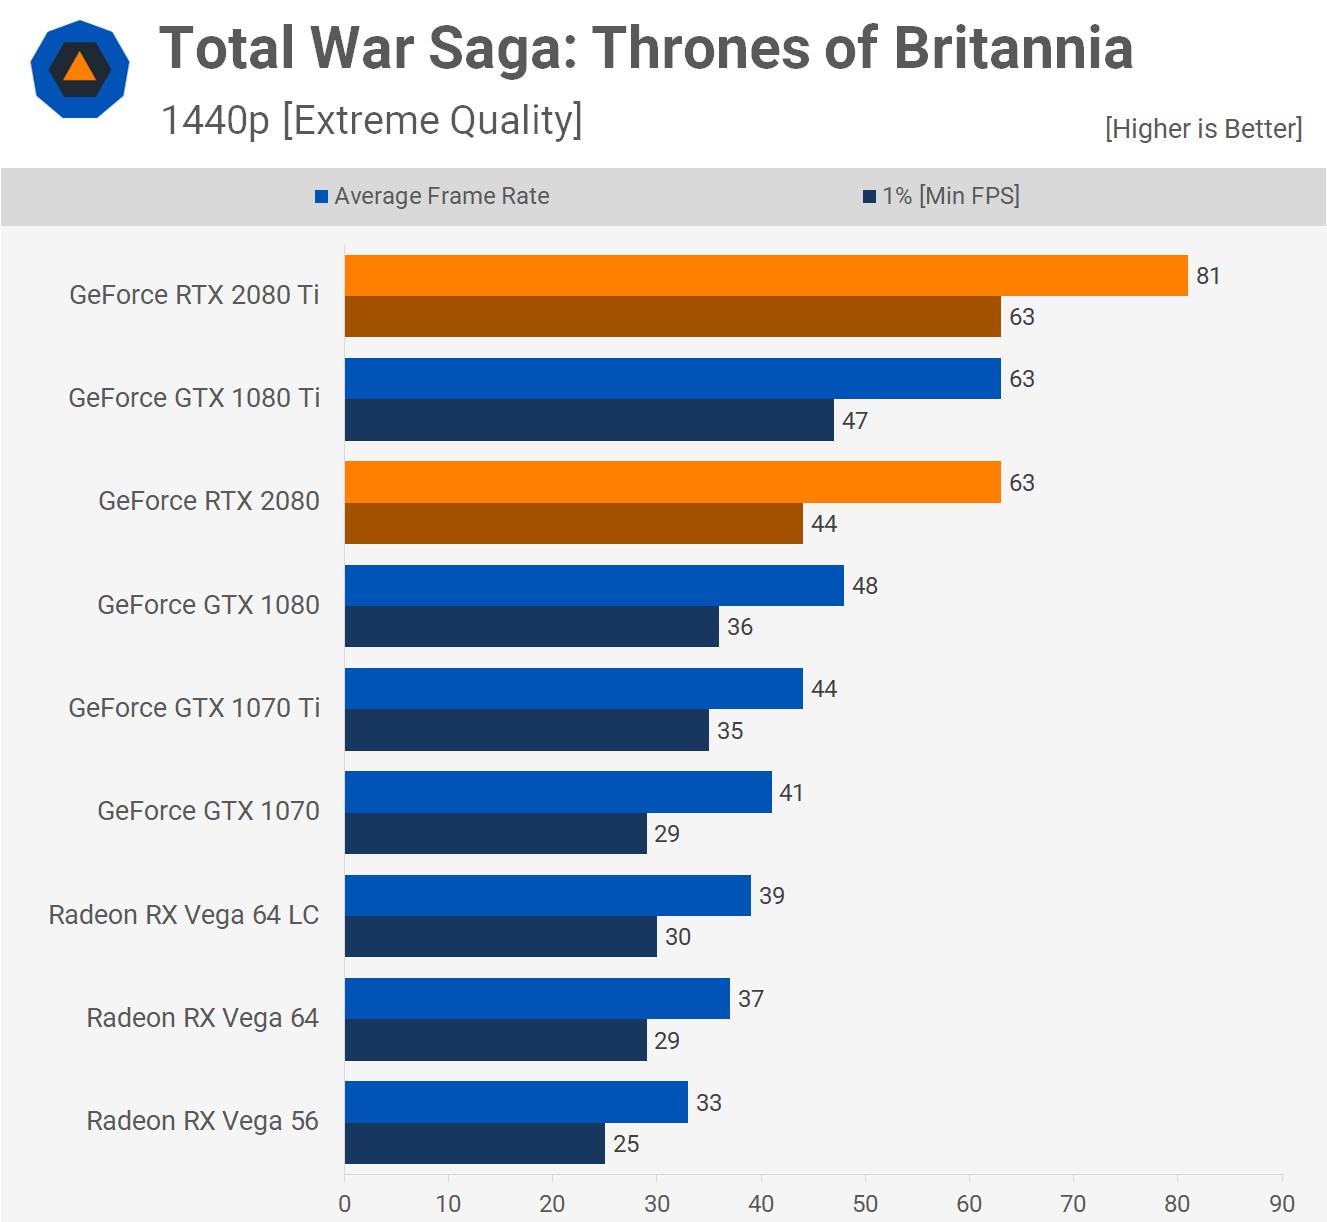 Total War Saga 1440p